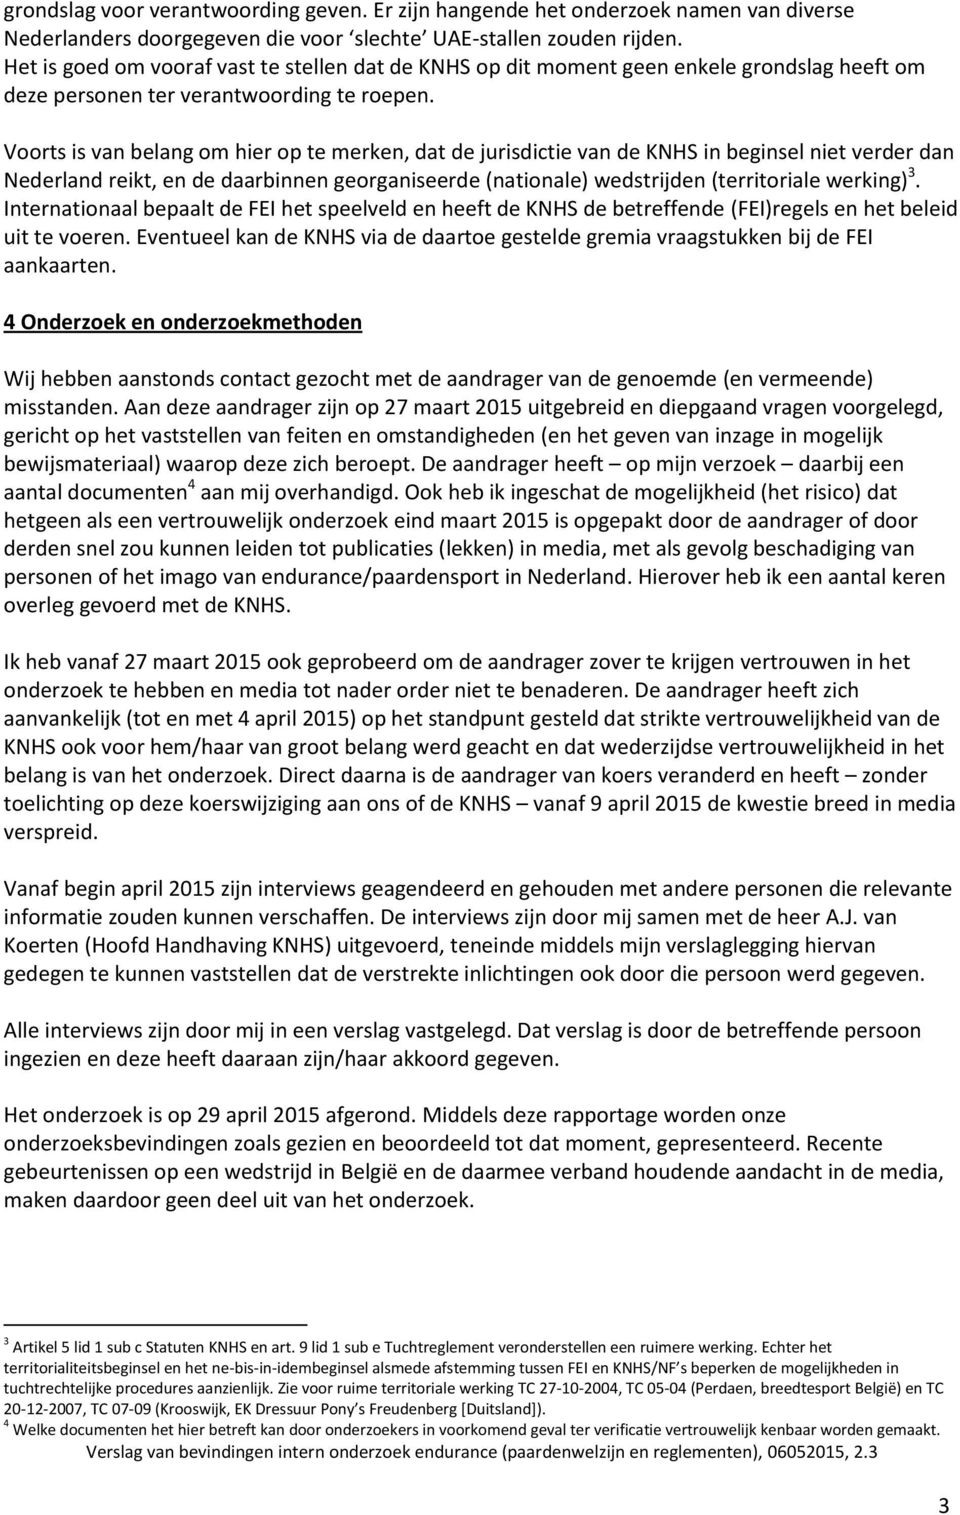 Voorts is van belang om hier op te merken, dat de jurisdictie van de KNHS in beginsel niet verder dan Nederland reikt, en de daarbinnen georganiseerde (nationale) wedstrijden (territoriale werking) 3.